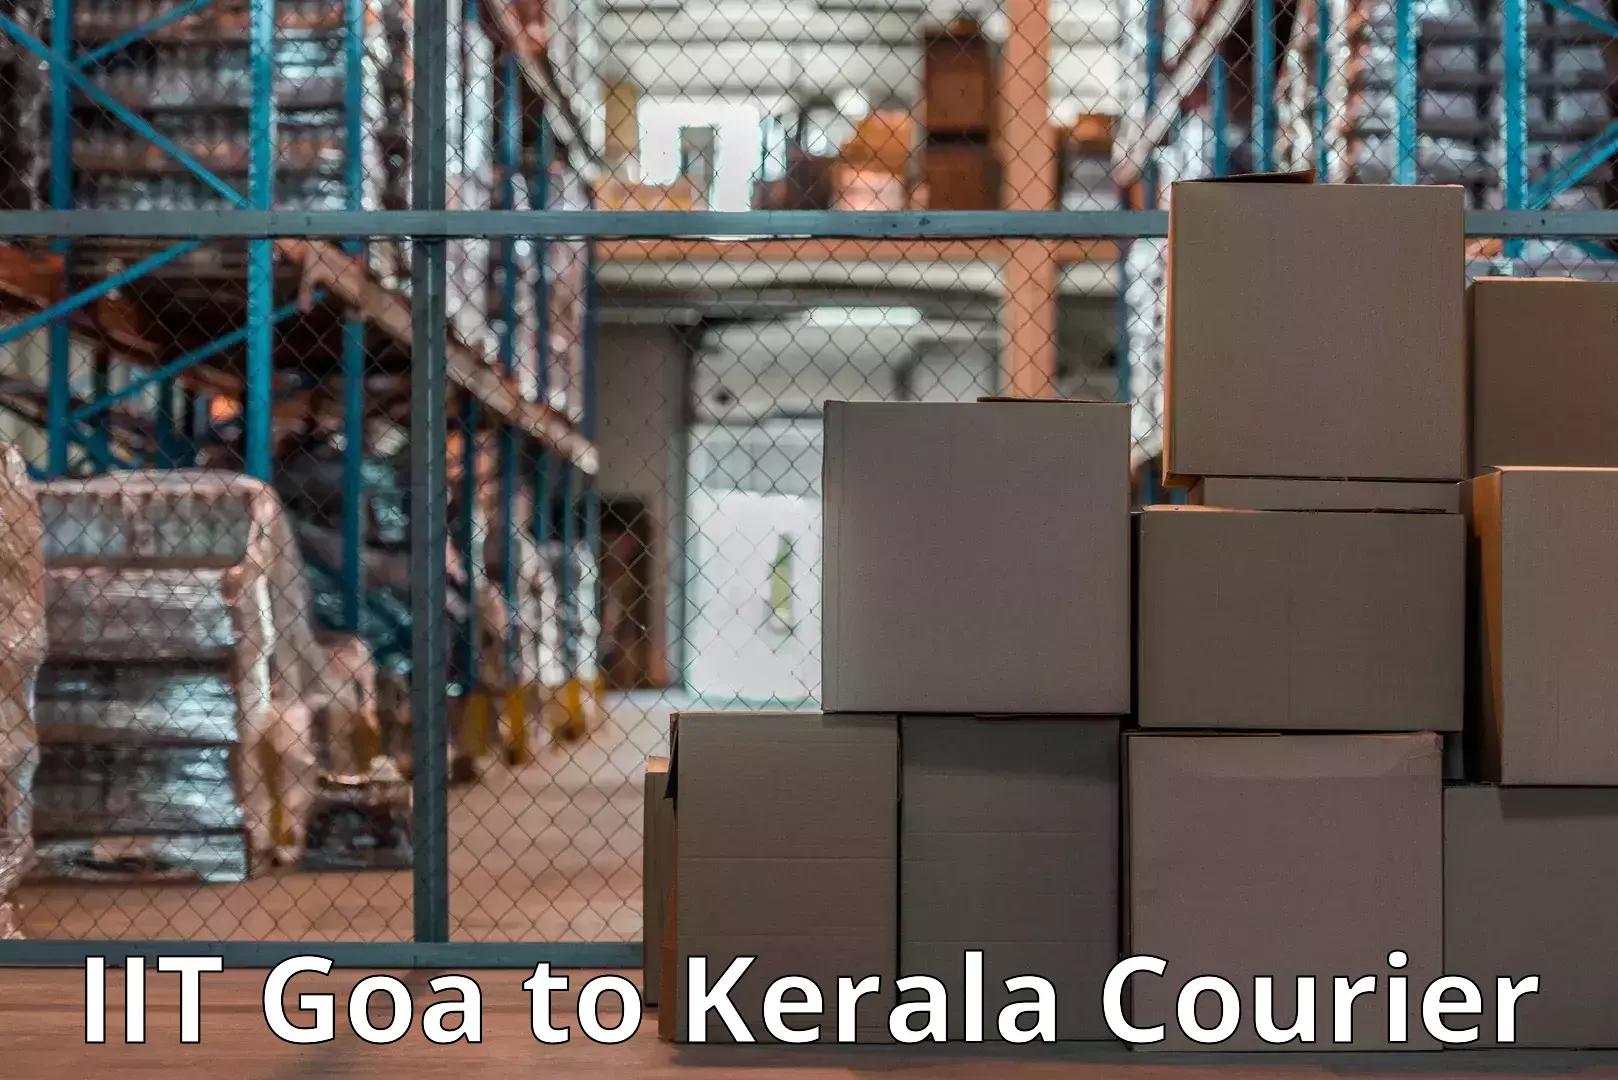 Professional furniture movers IIT Goa to Kalluvathukkal